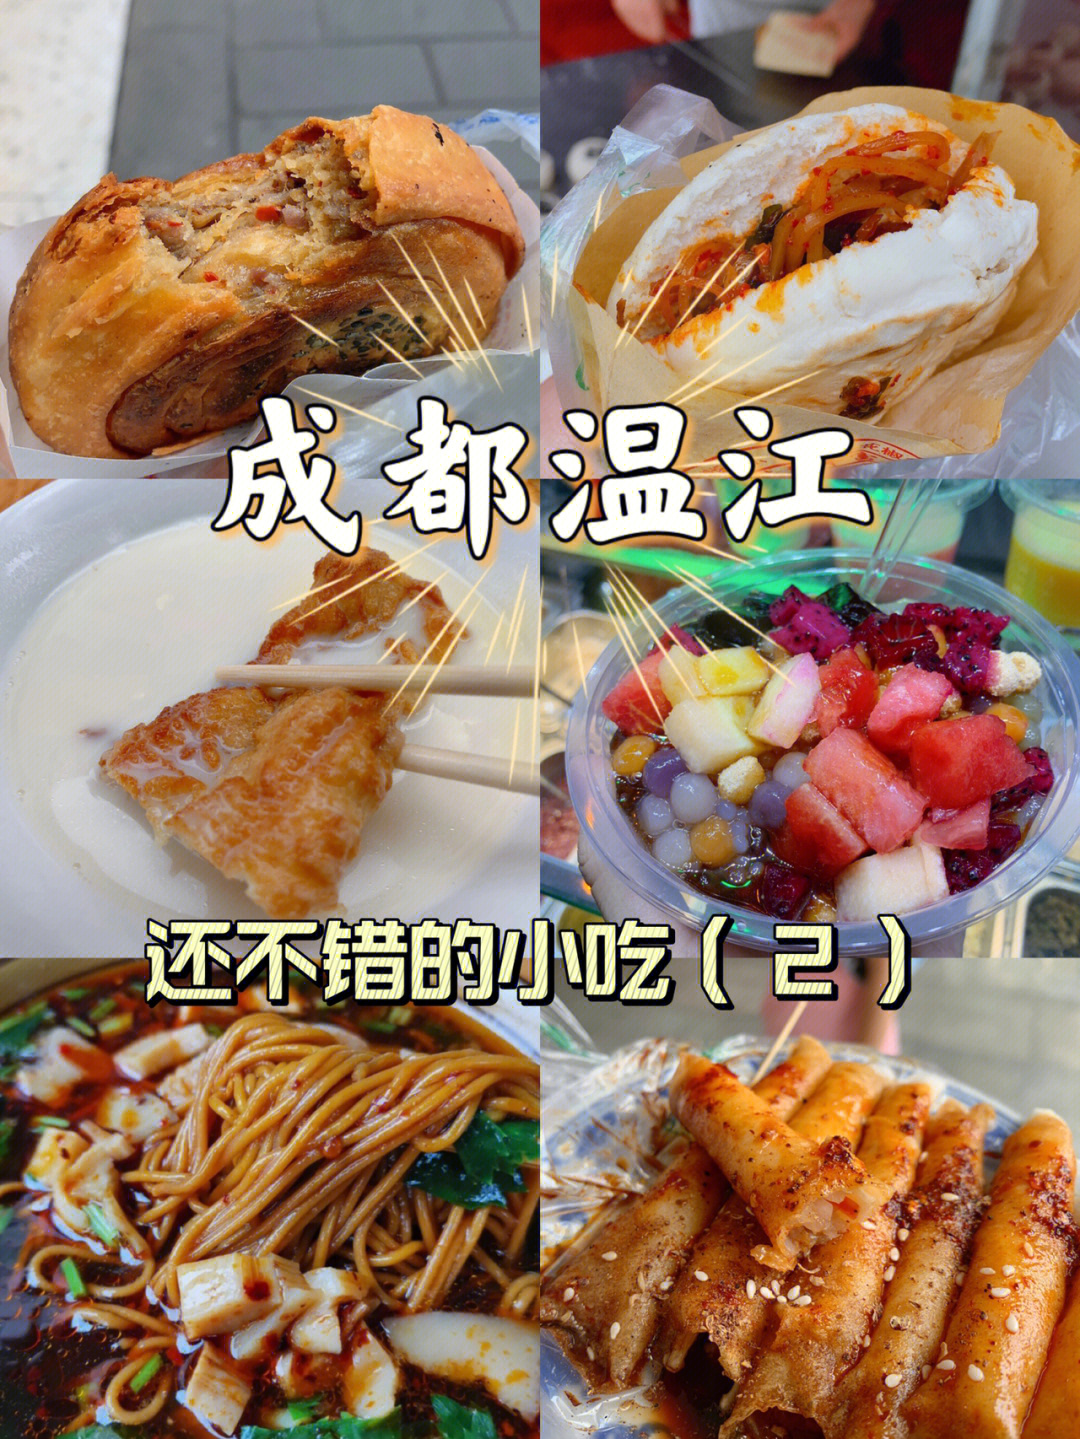 温江美食 排行榜图片